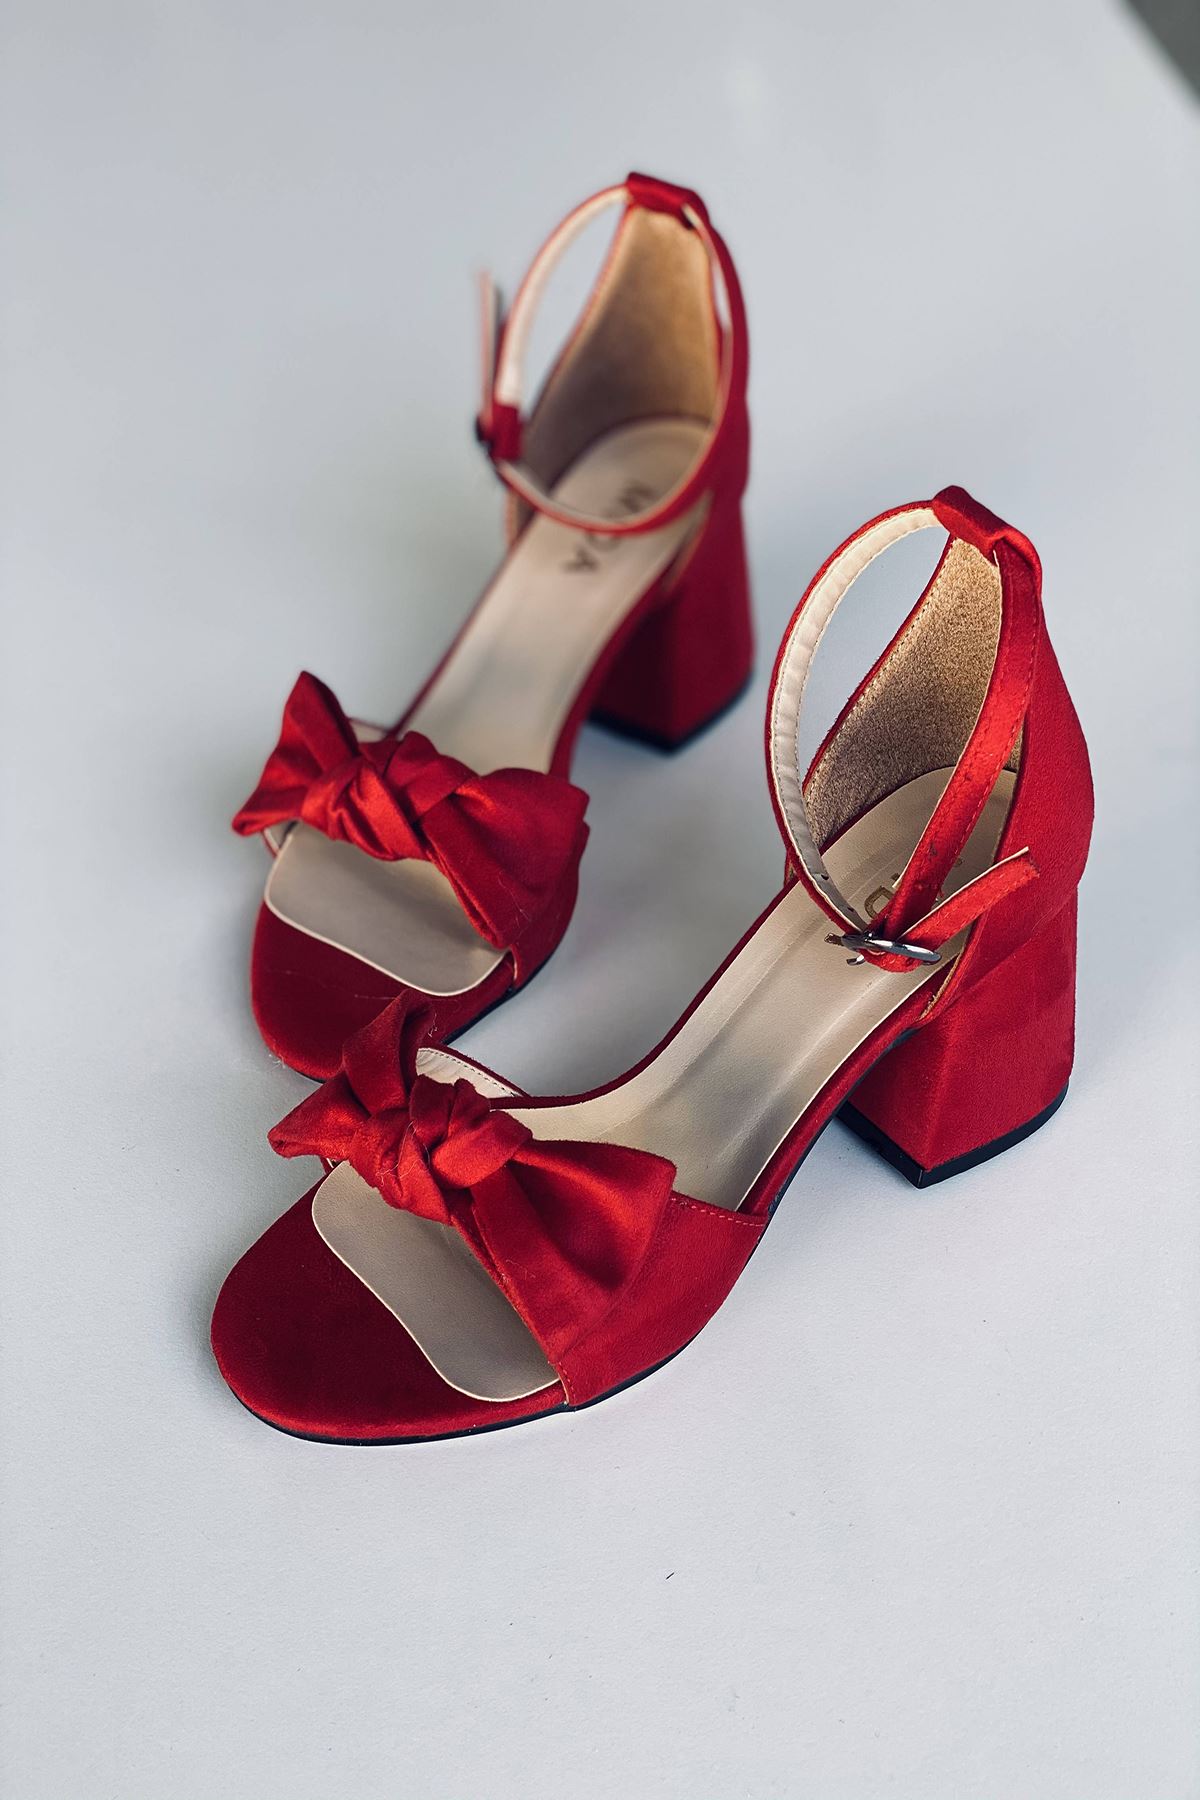 Y553 Kırmızı Süet Topuklu Ayakkabı